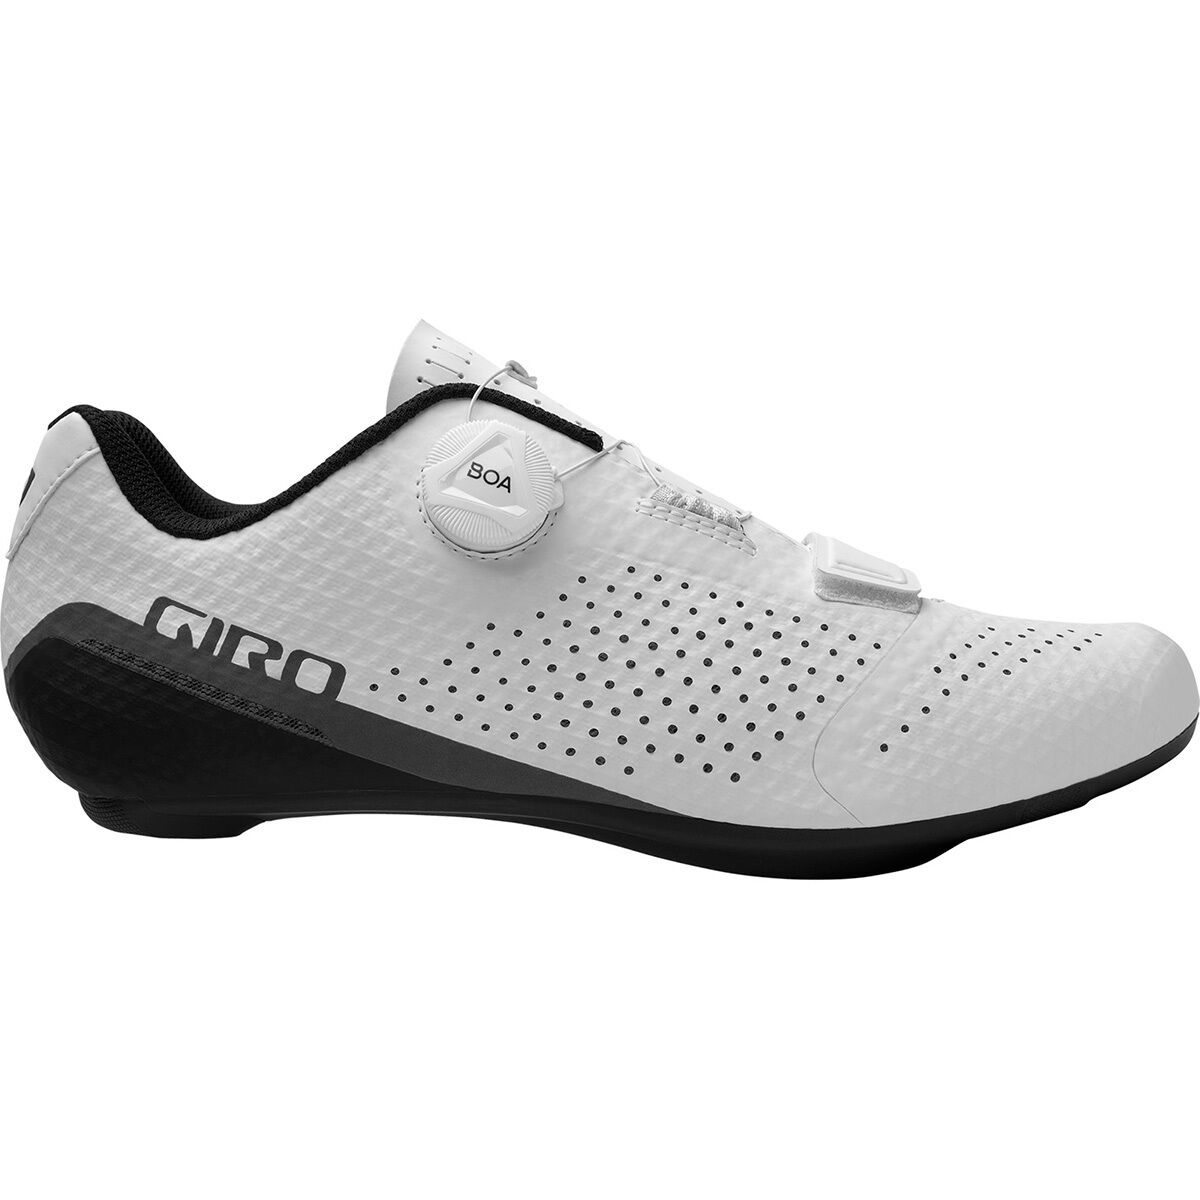 Giro Cadet Cycling Shoe - Men's White, 41.0